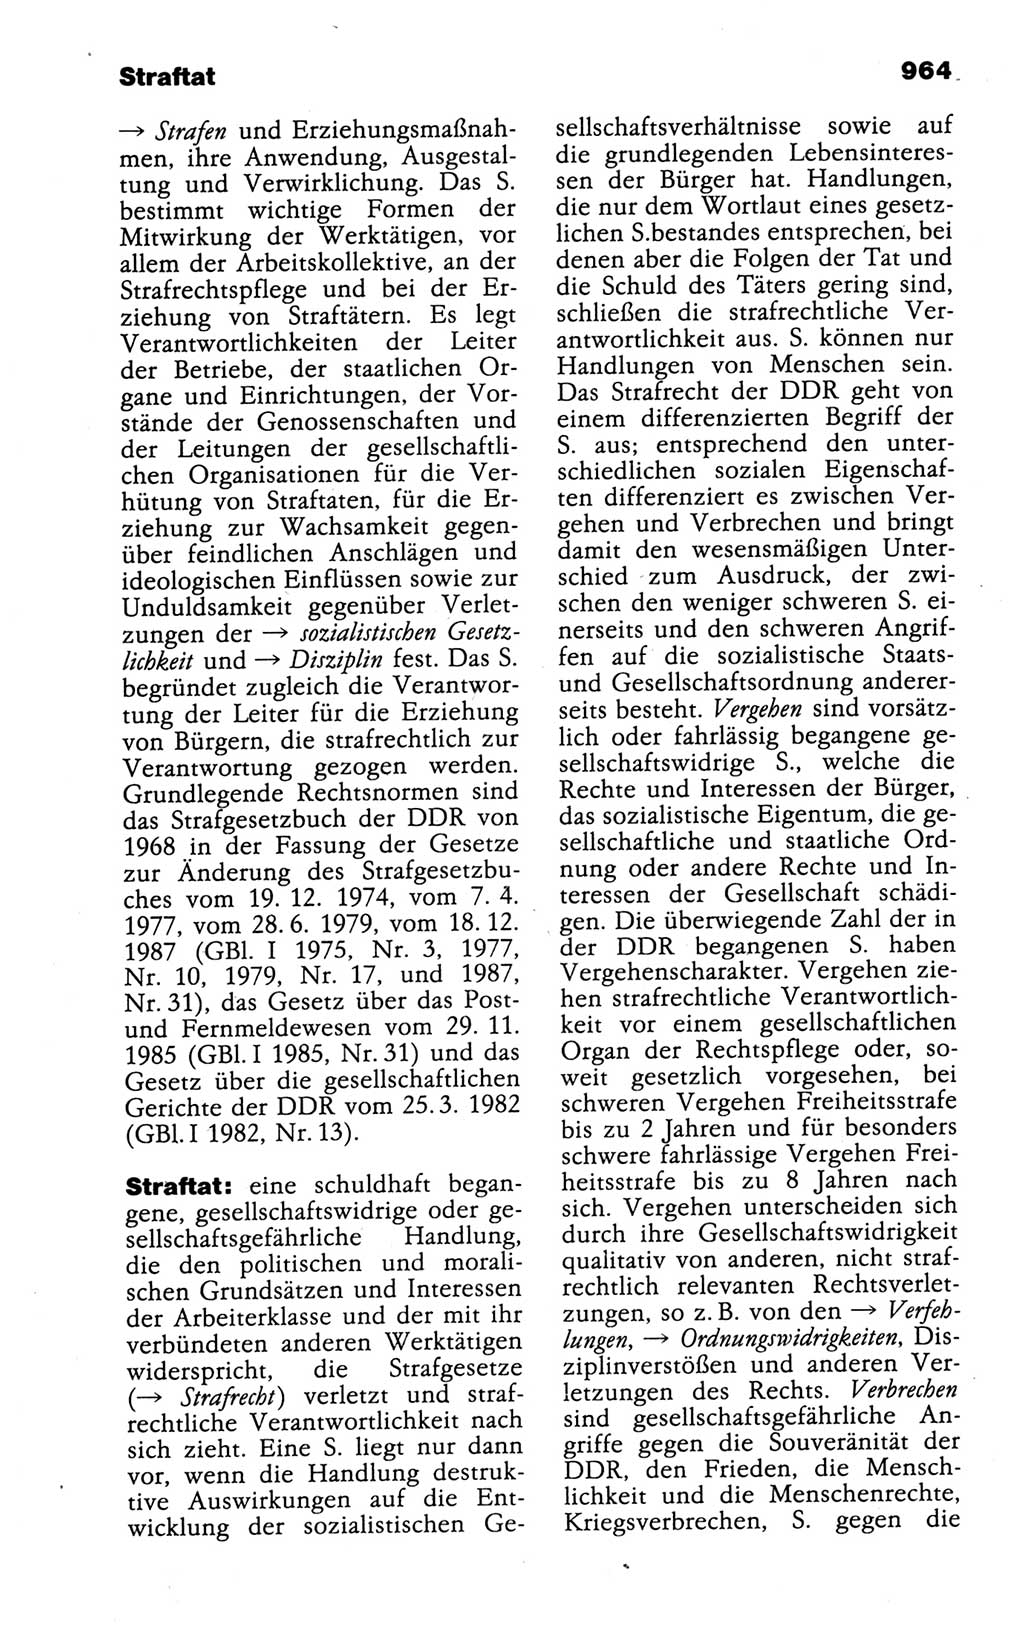 Kleines politisches Wörterbuch [Deutsche Demokratische Republik (DDR)] 1988, Seite 964 (Kl. pol. Wb. DDR 1988, S. 964)